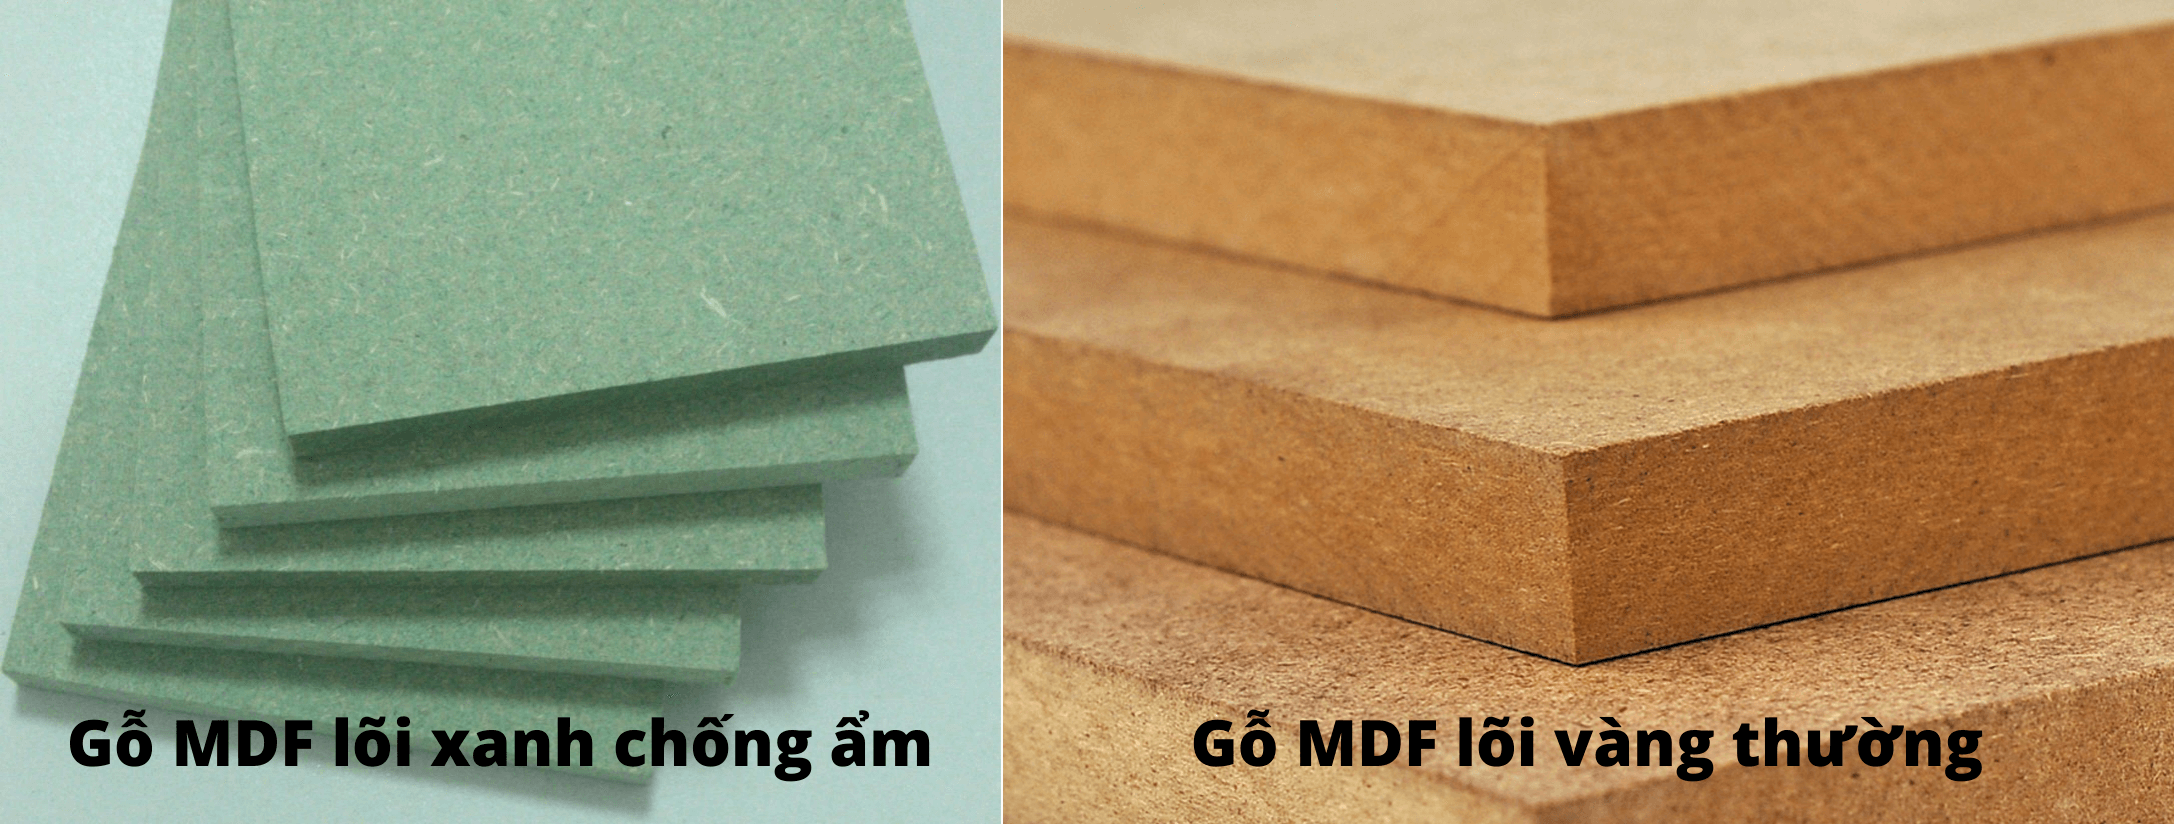 Gỗ MDF có 2 loại: Loại thường và chống ẩm